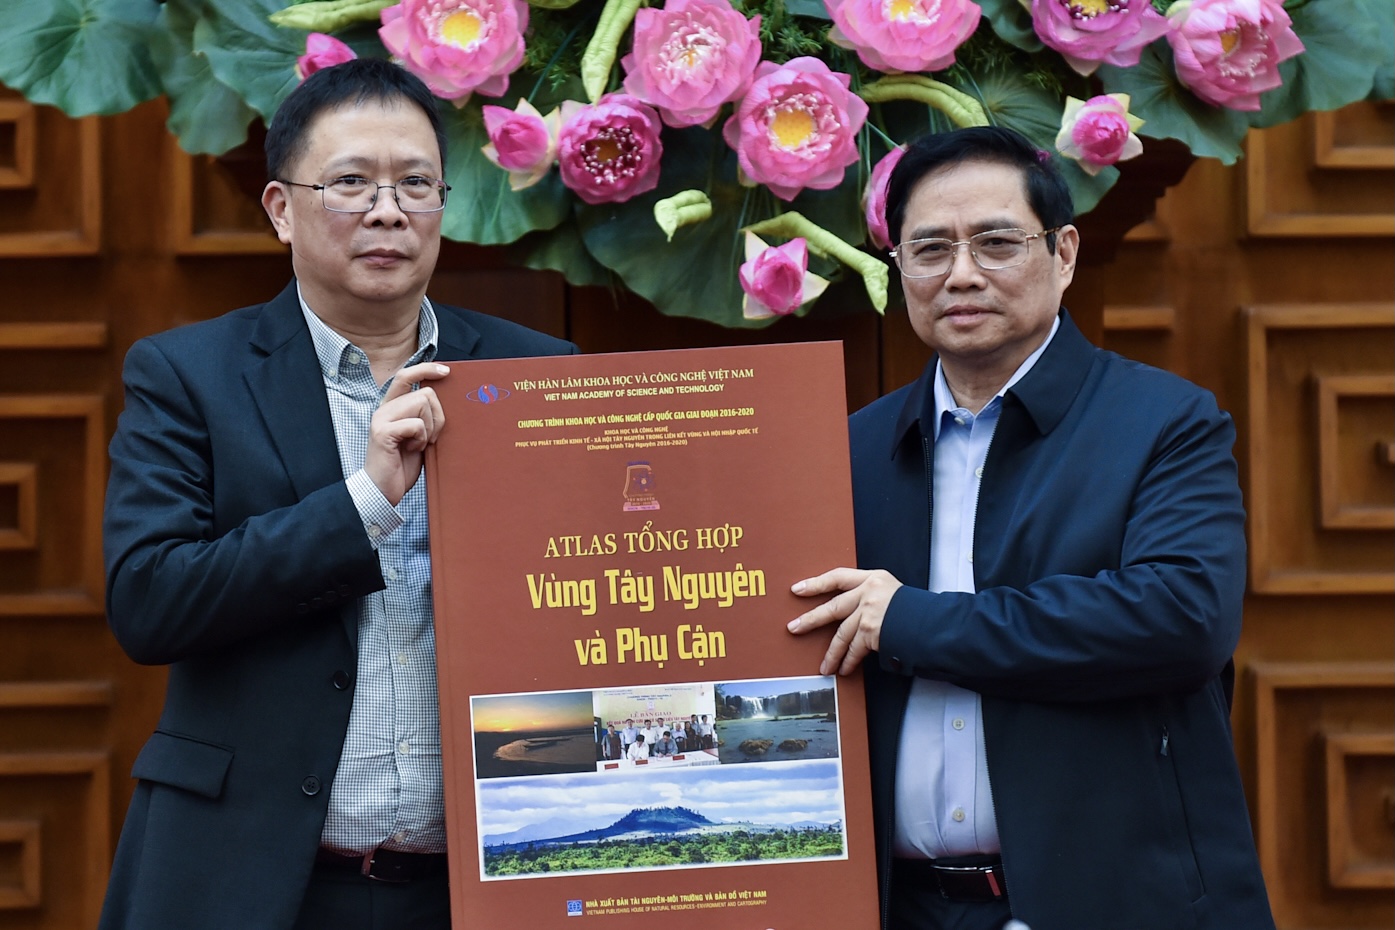 Viện Hàn lâm Khoa học và Công nghệ Việt Nam tặng Thủ tướng tập bản đồ địa lý vùng Tây Nguyên và phụ cận. ẢNh: VGP/Nhật Bắc